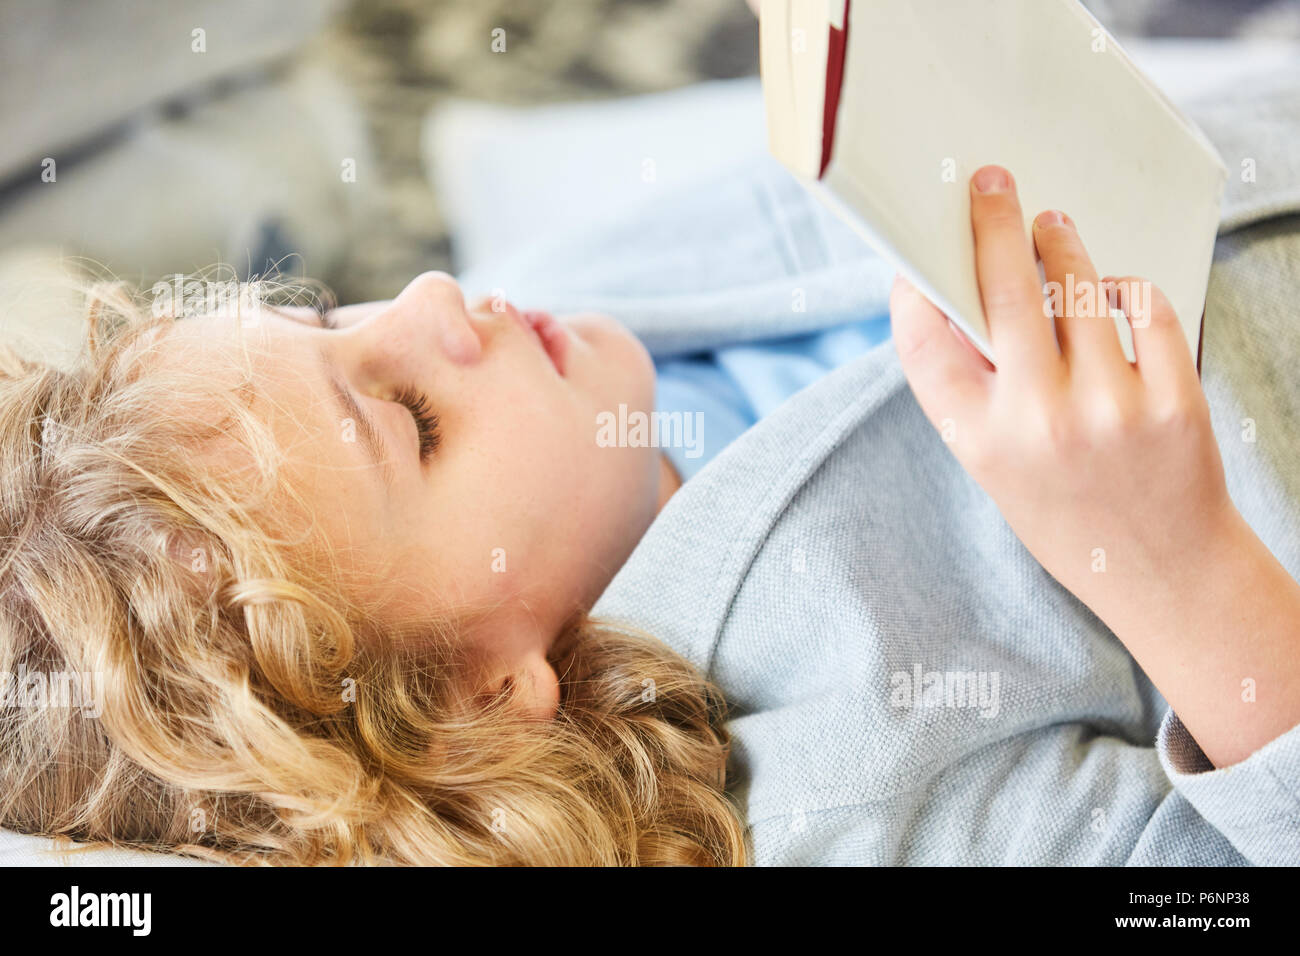 Blonde Junge liest in einem spannenden Storybook oder Sachbuch Stockfoto